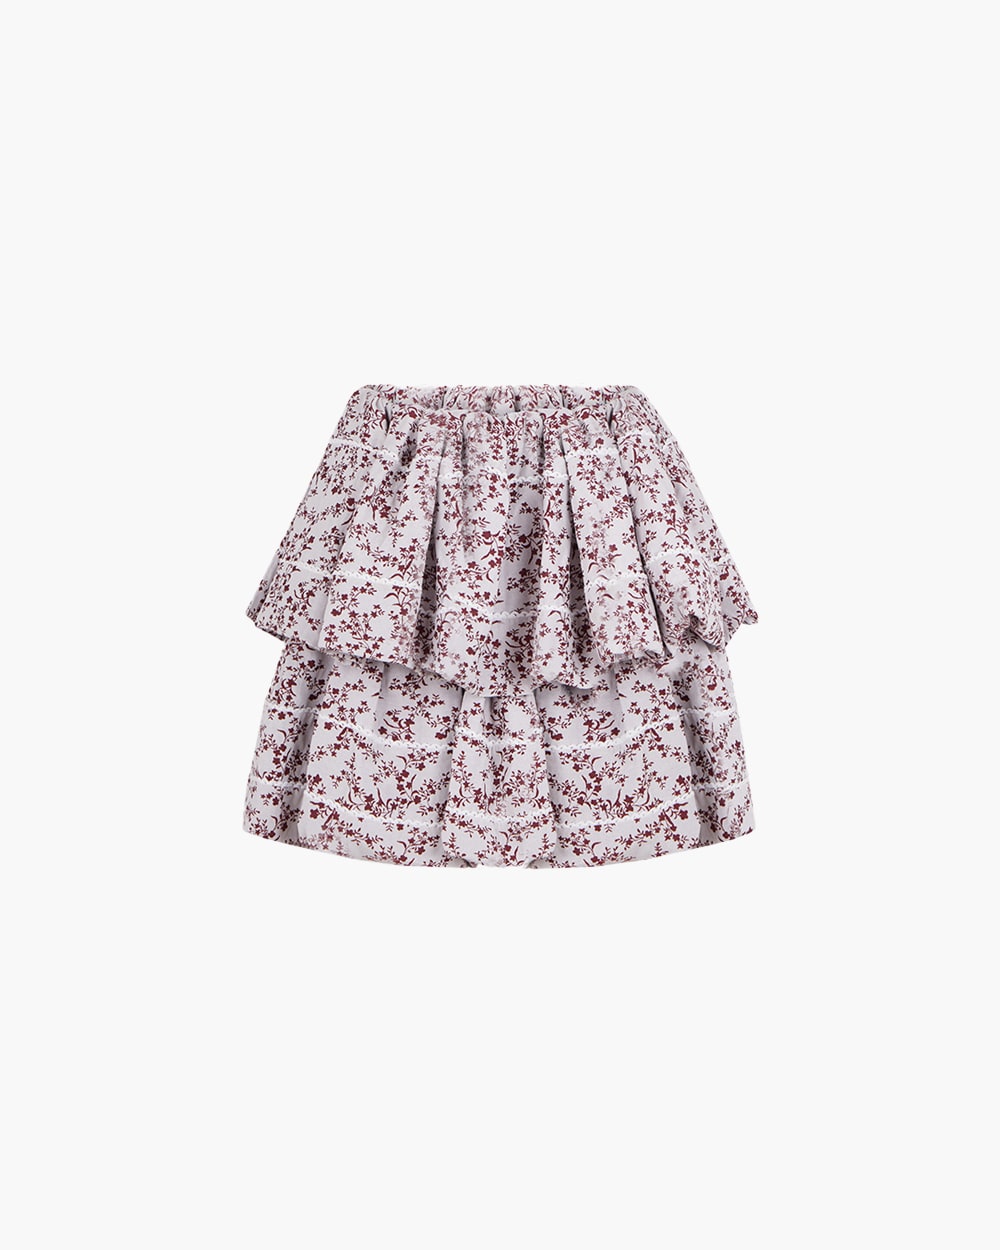 Inasami Noof Printed Mini Skirt